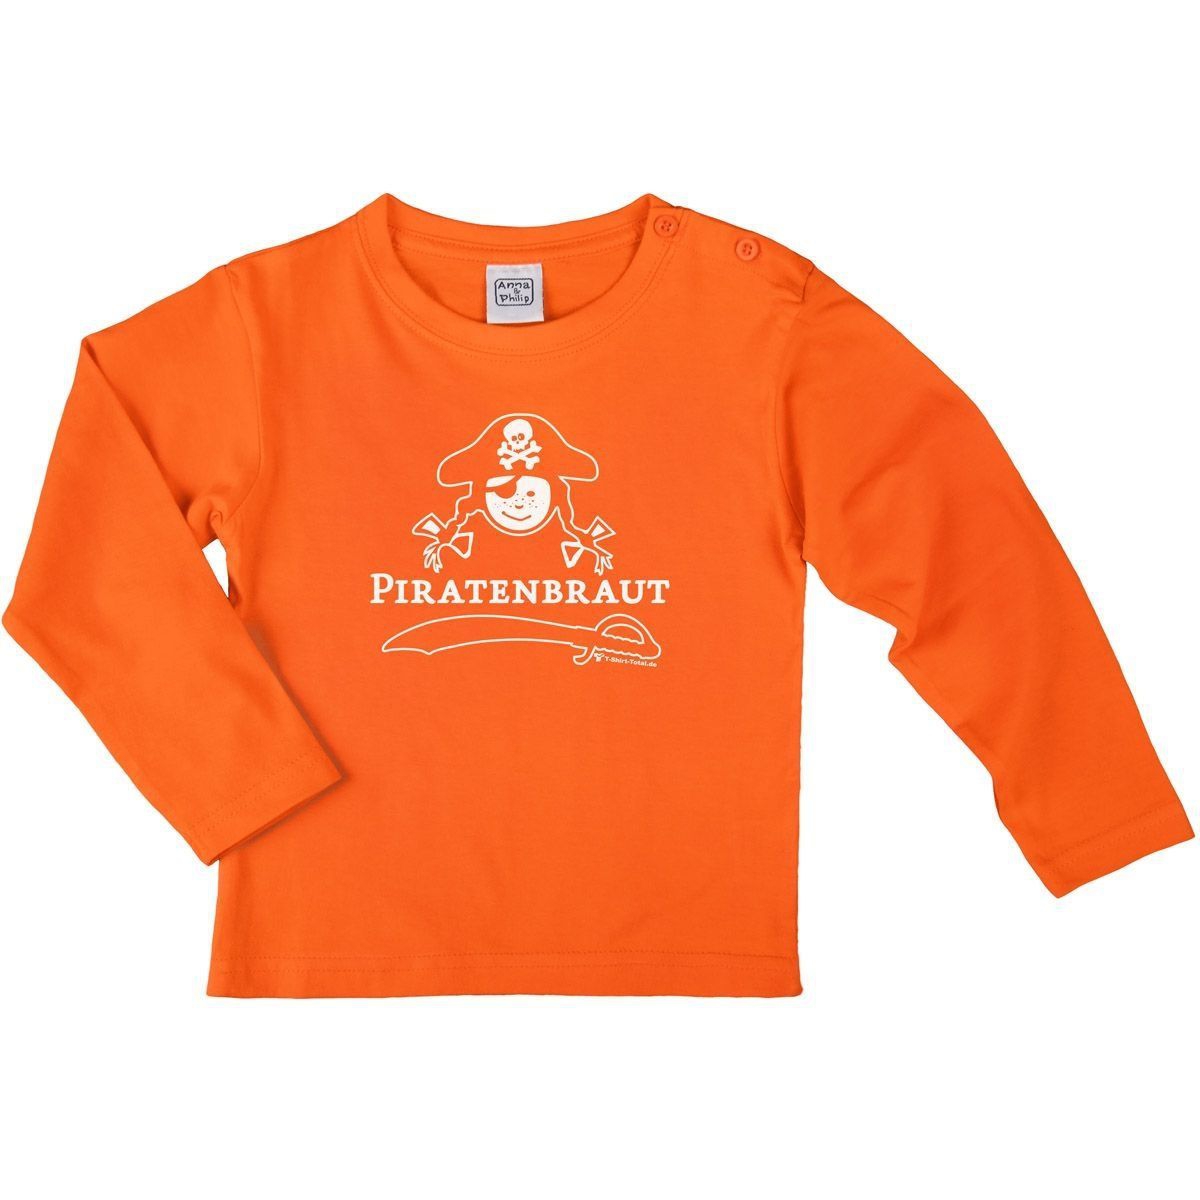 Piratenbraut Kinder Langarm Shirt orange 110 / 116